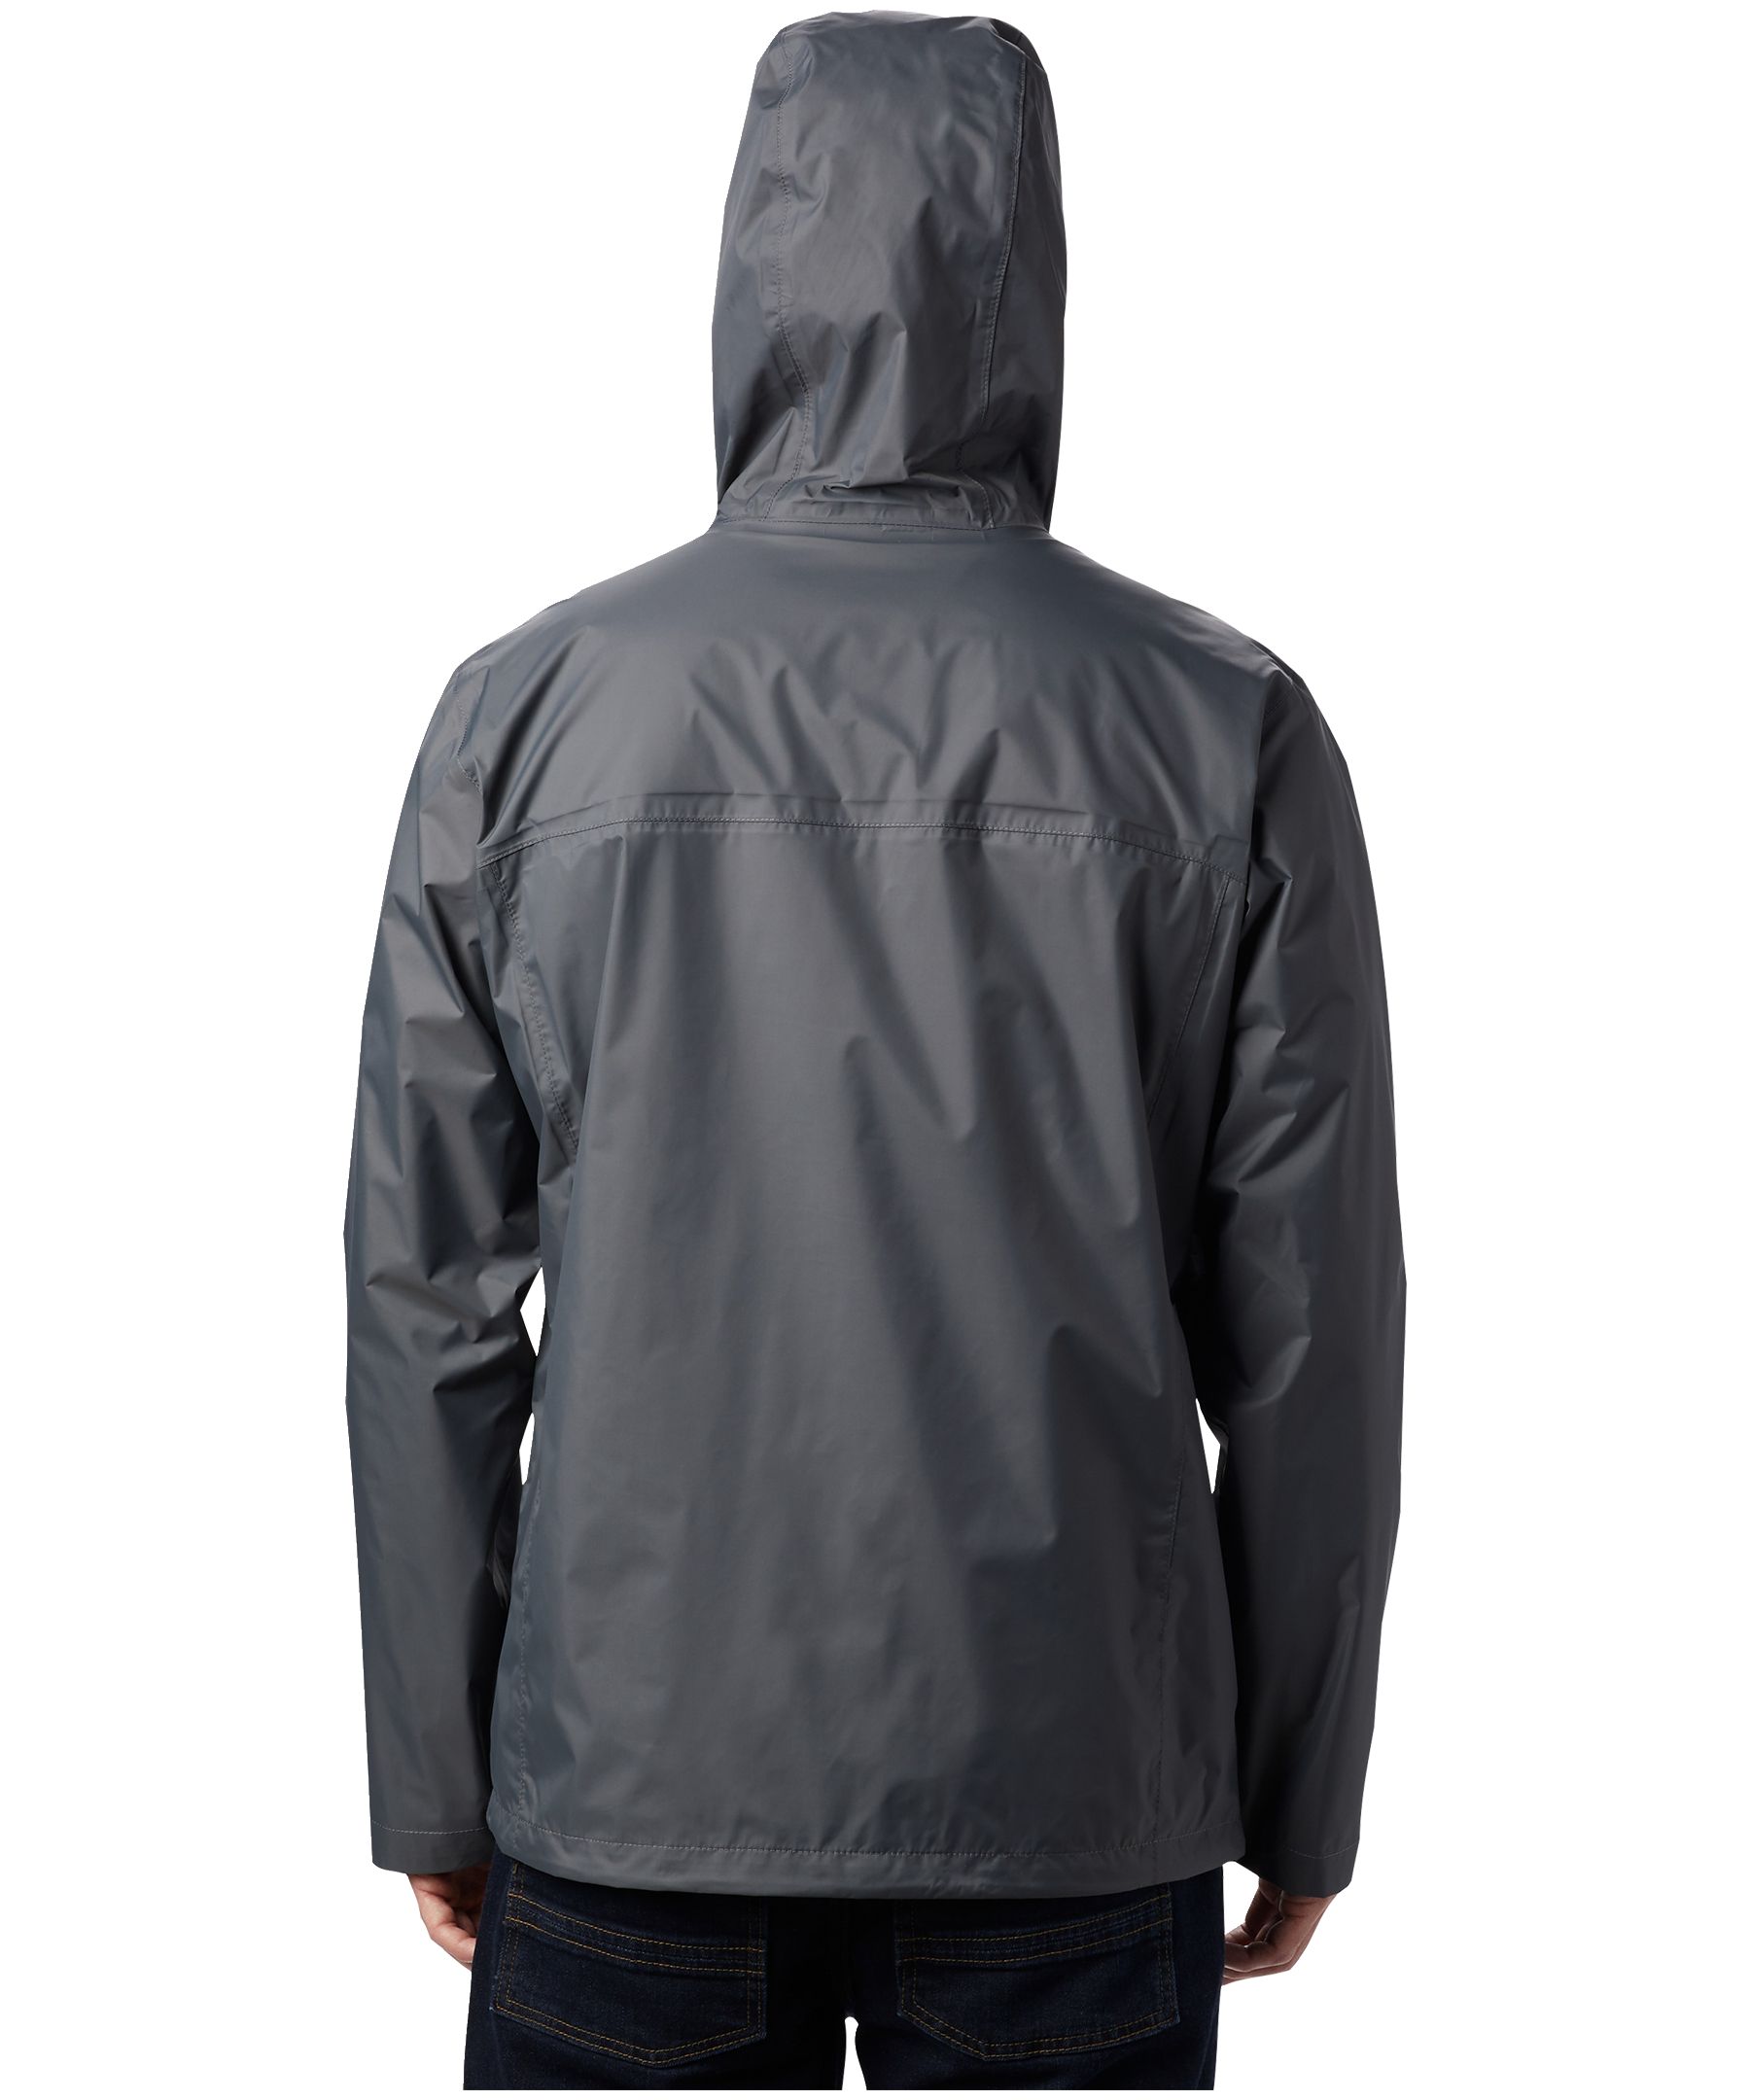 Columbia Men's Watertight II Hooded Rain Jacket, Waterproof, Breathable,  Packable, Hiking